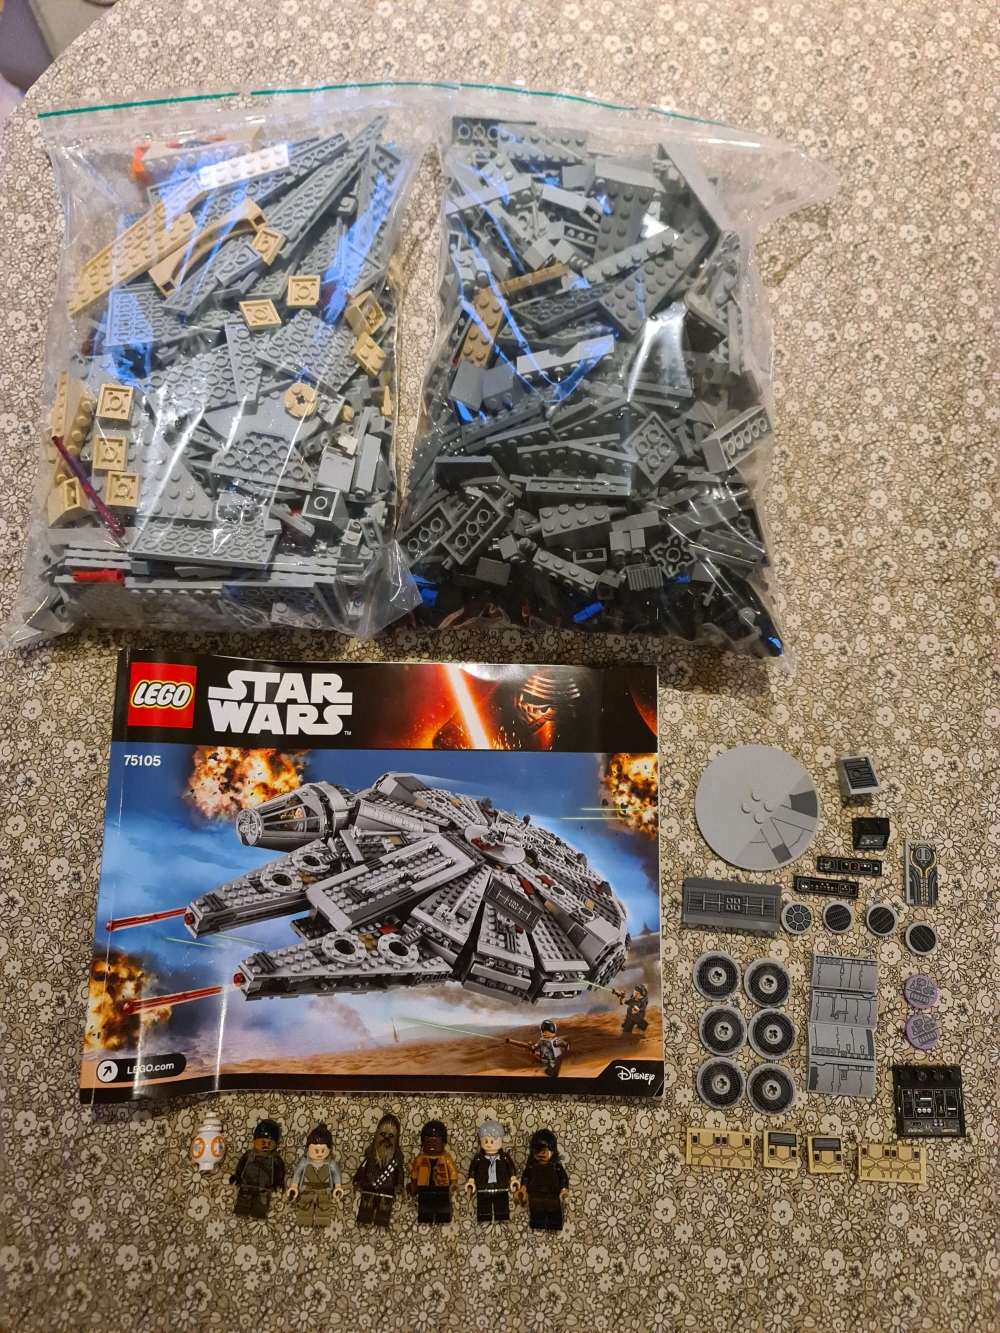 Sett 75105 fra Lego Star Wars : Episode 7 serien.
Som nytt.
Komplett med manual.